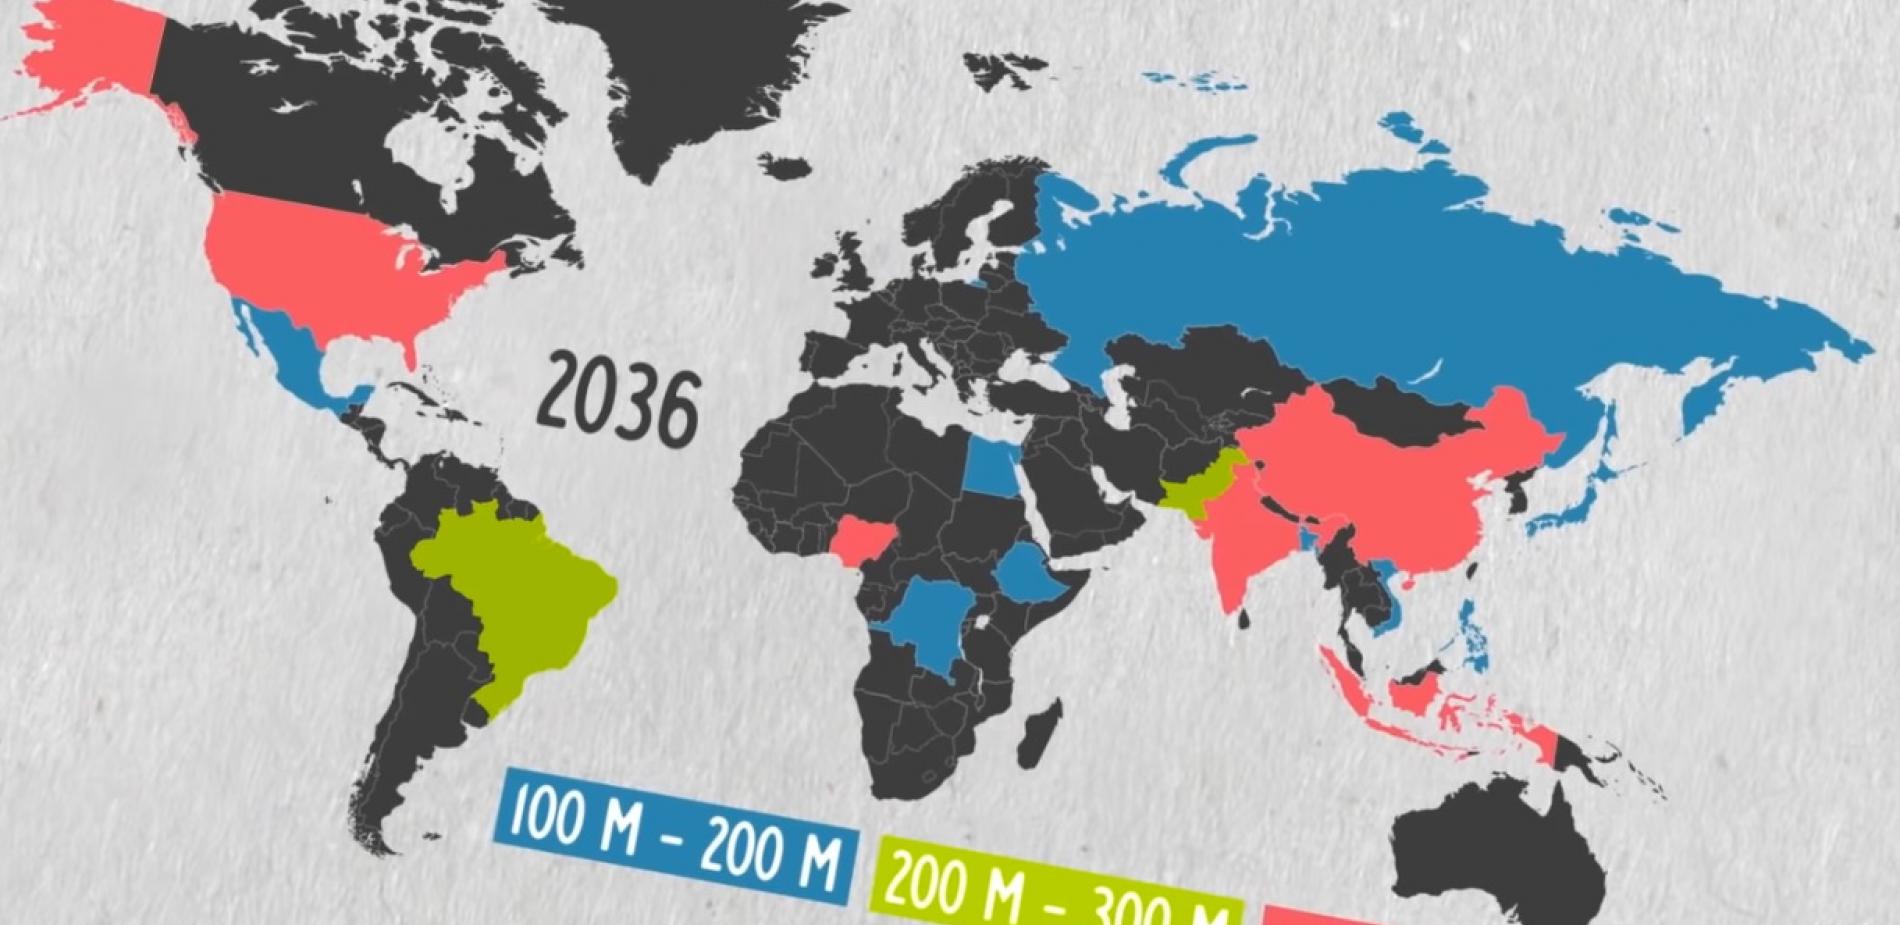 "La Chine sera toujours le pays le plus peuplé du monde en 2100"